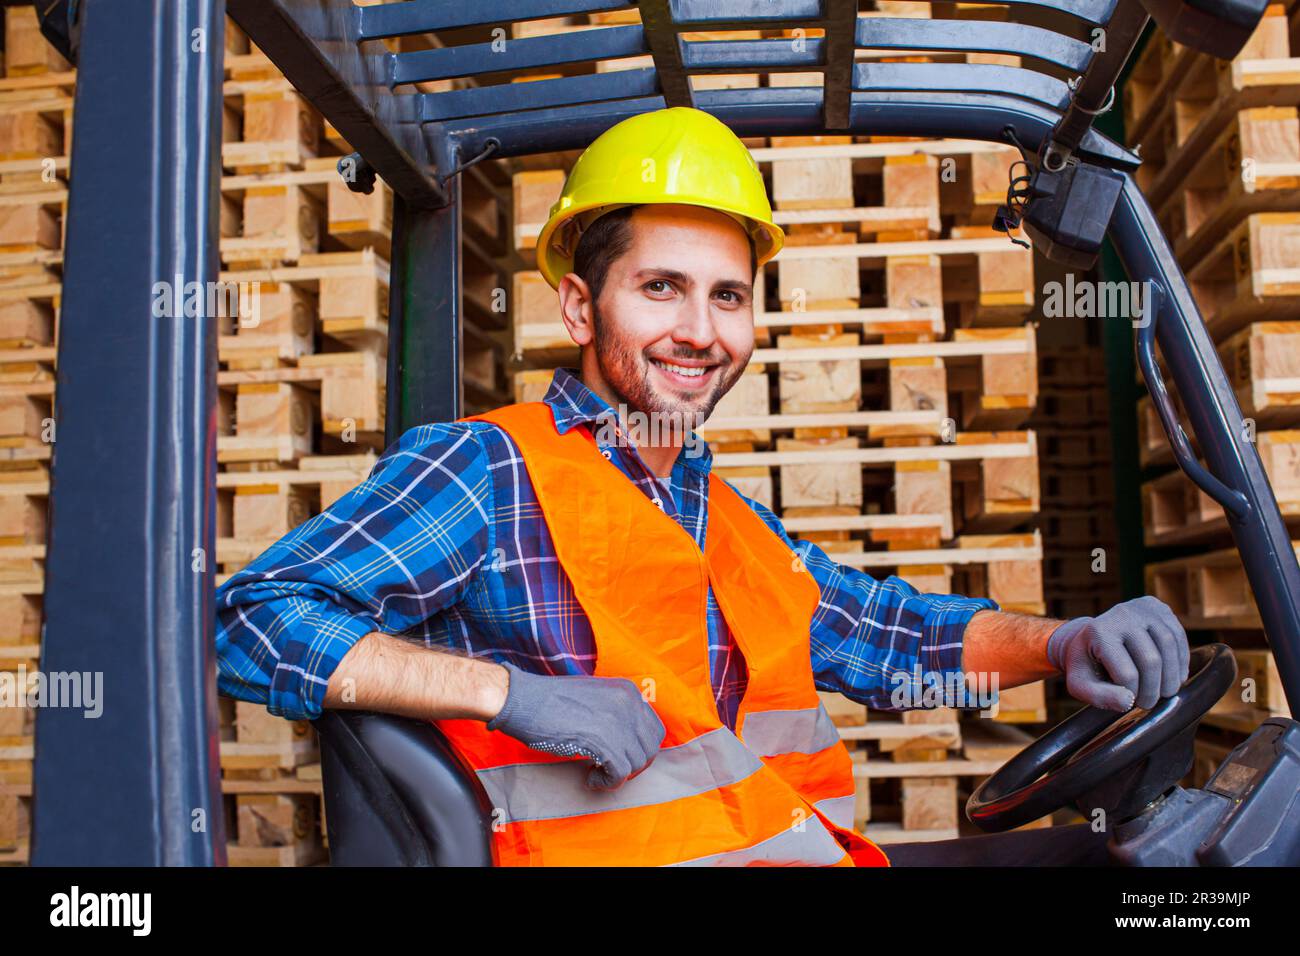 Bel lavoratore sorridente che guida carrello elevatore in magazzino. Concetto di industria della lavorazione del legno. Foto Stock